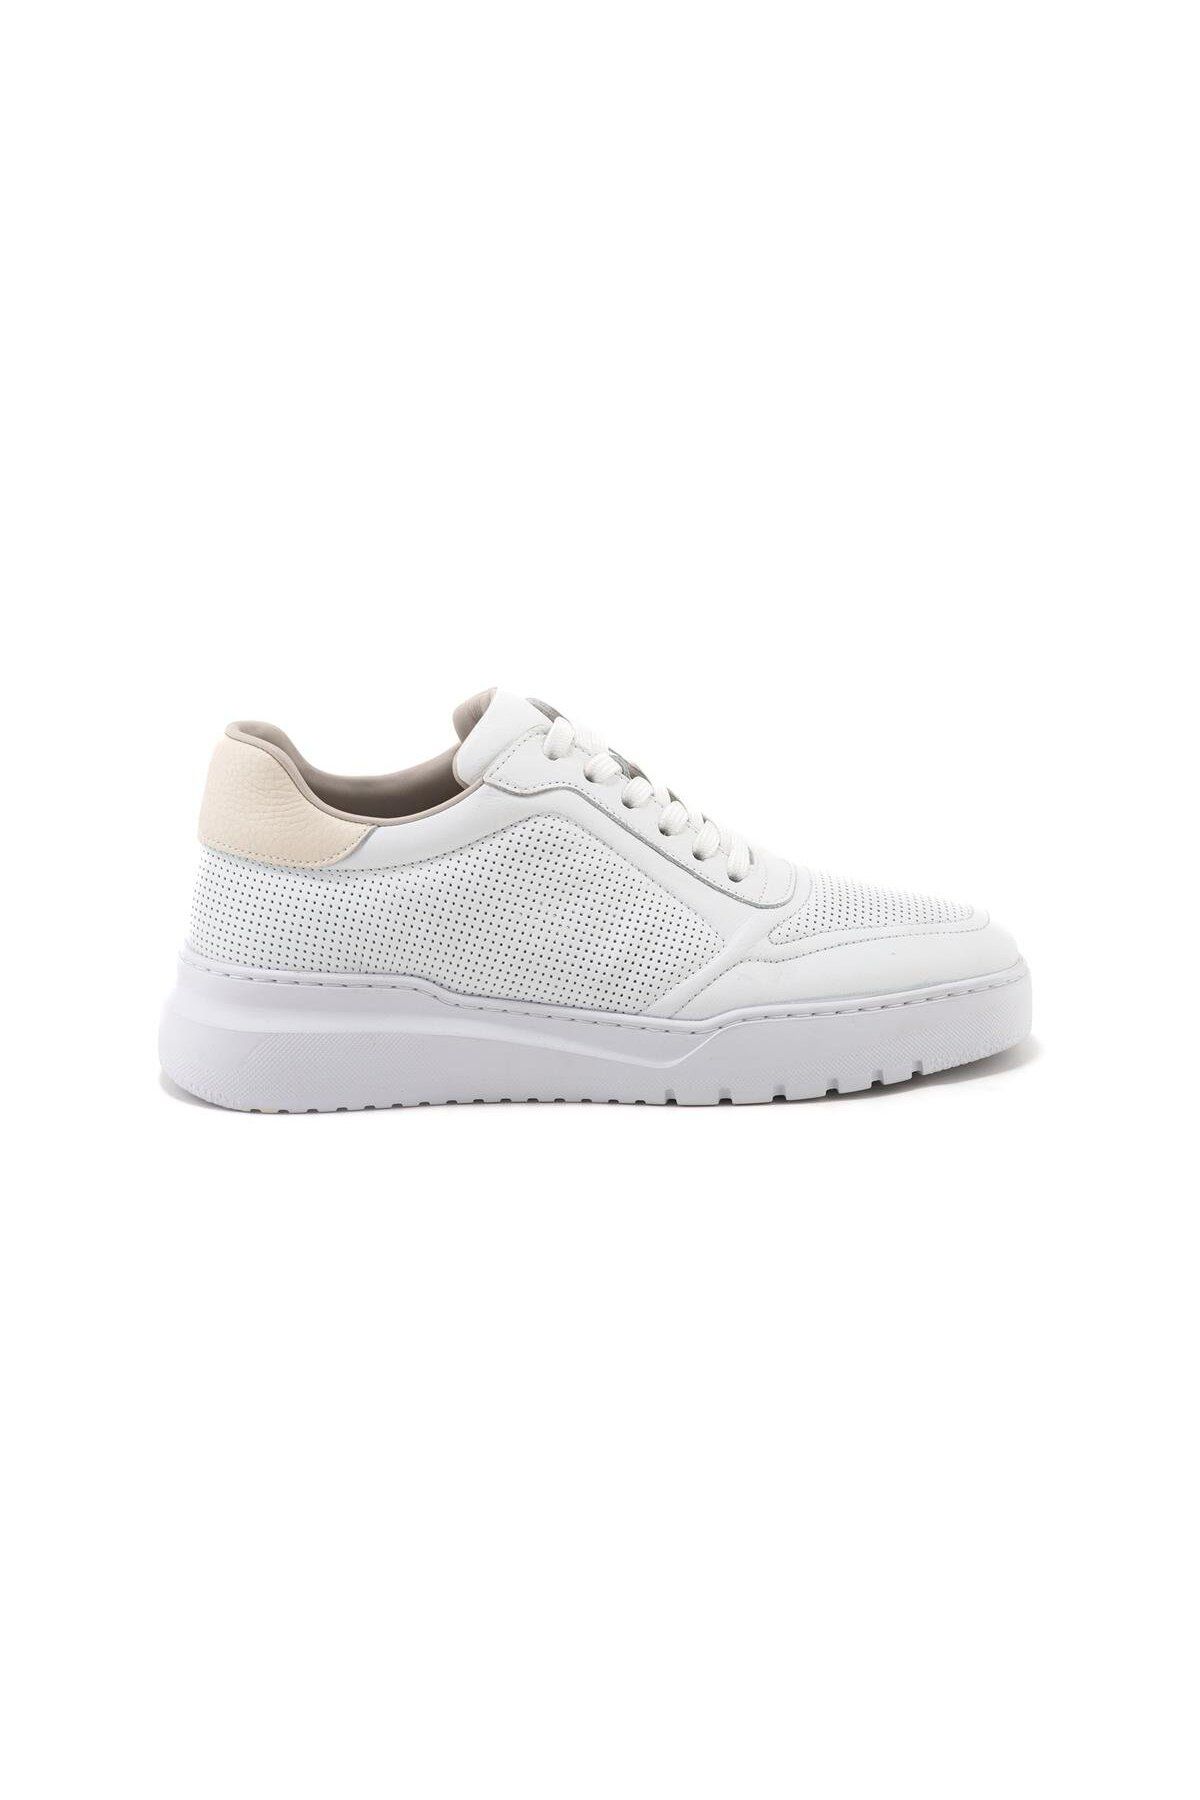 Libero L4688 Beyaz (BASKILI DERİ) Hakiki Deri Eva Taban Erkek Günlük Casual Ayakkabı